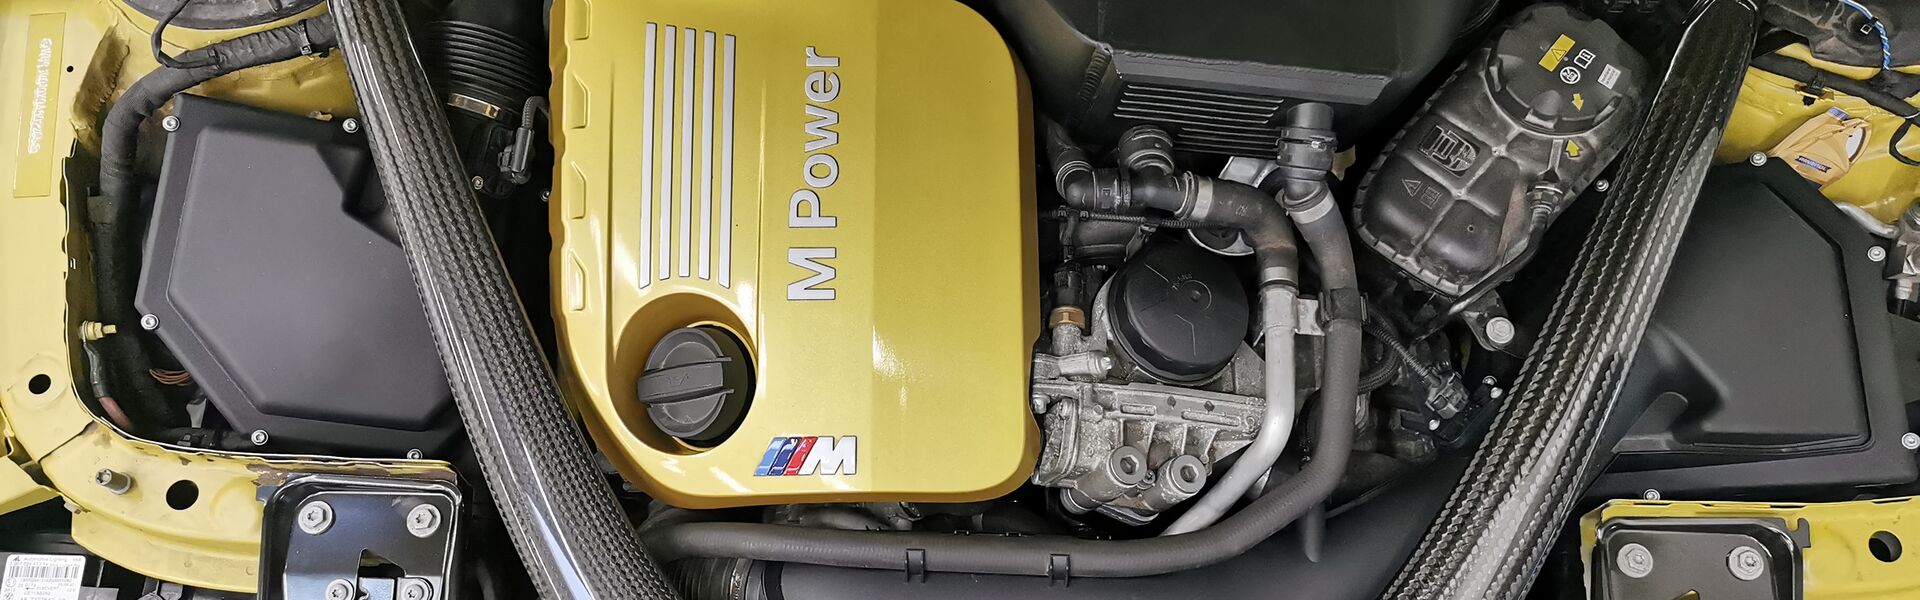 Engine McLaren 650S / 650S SPIDER